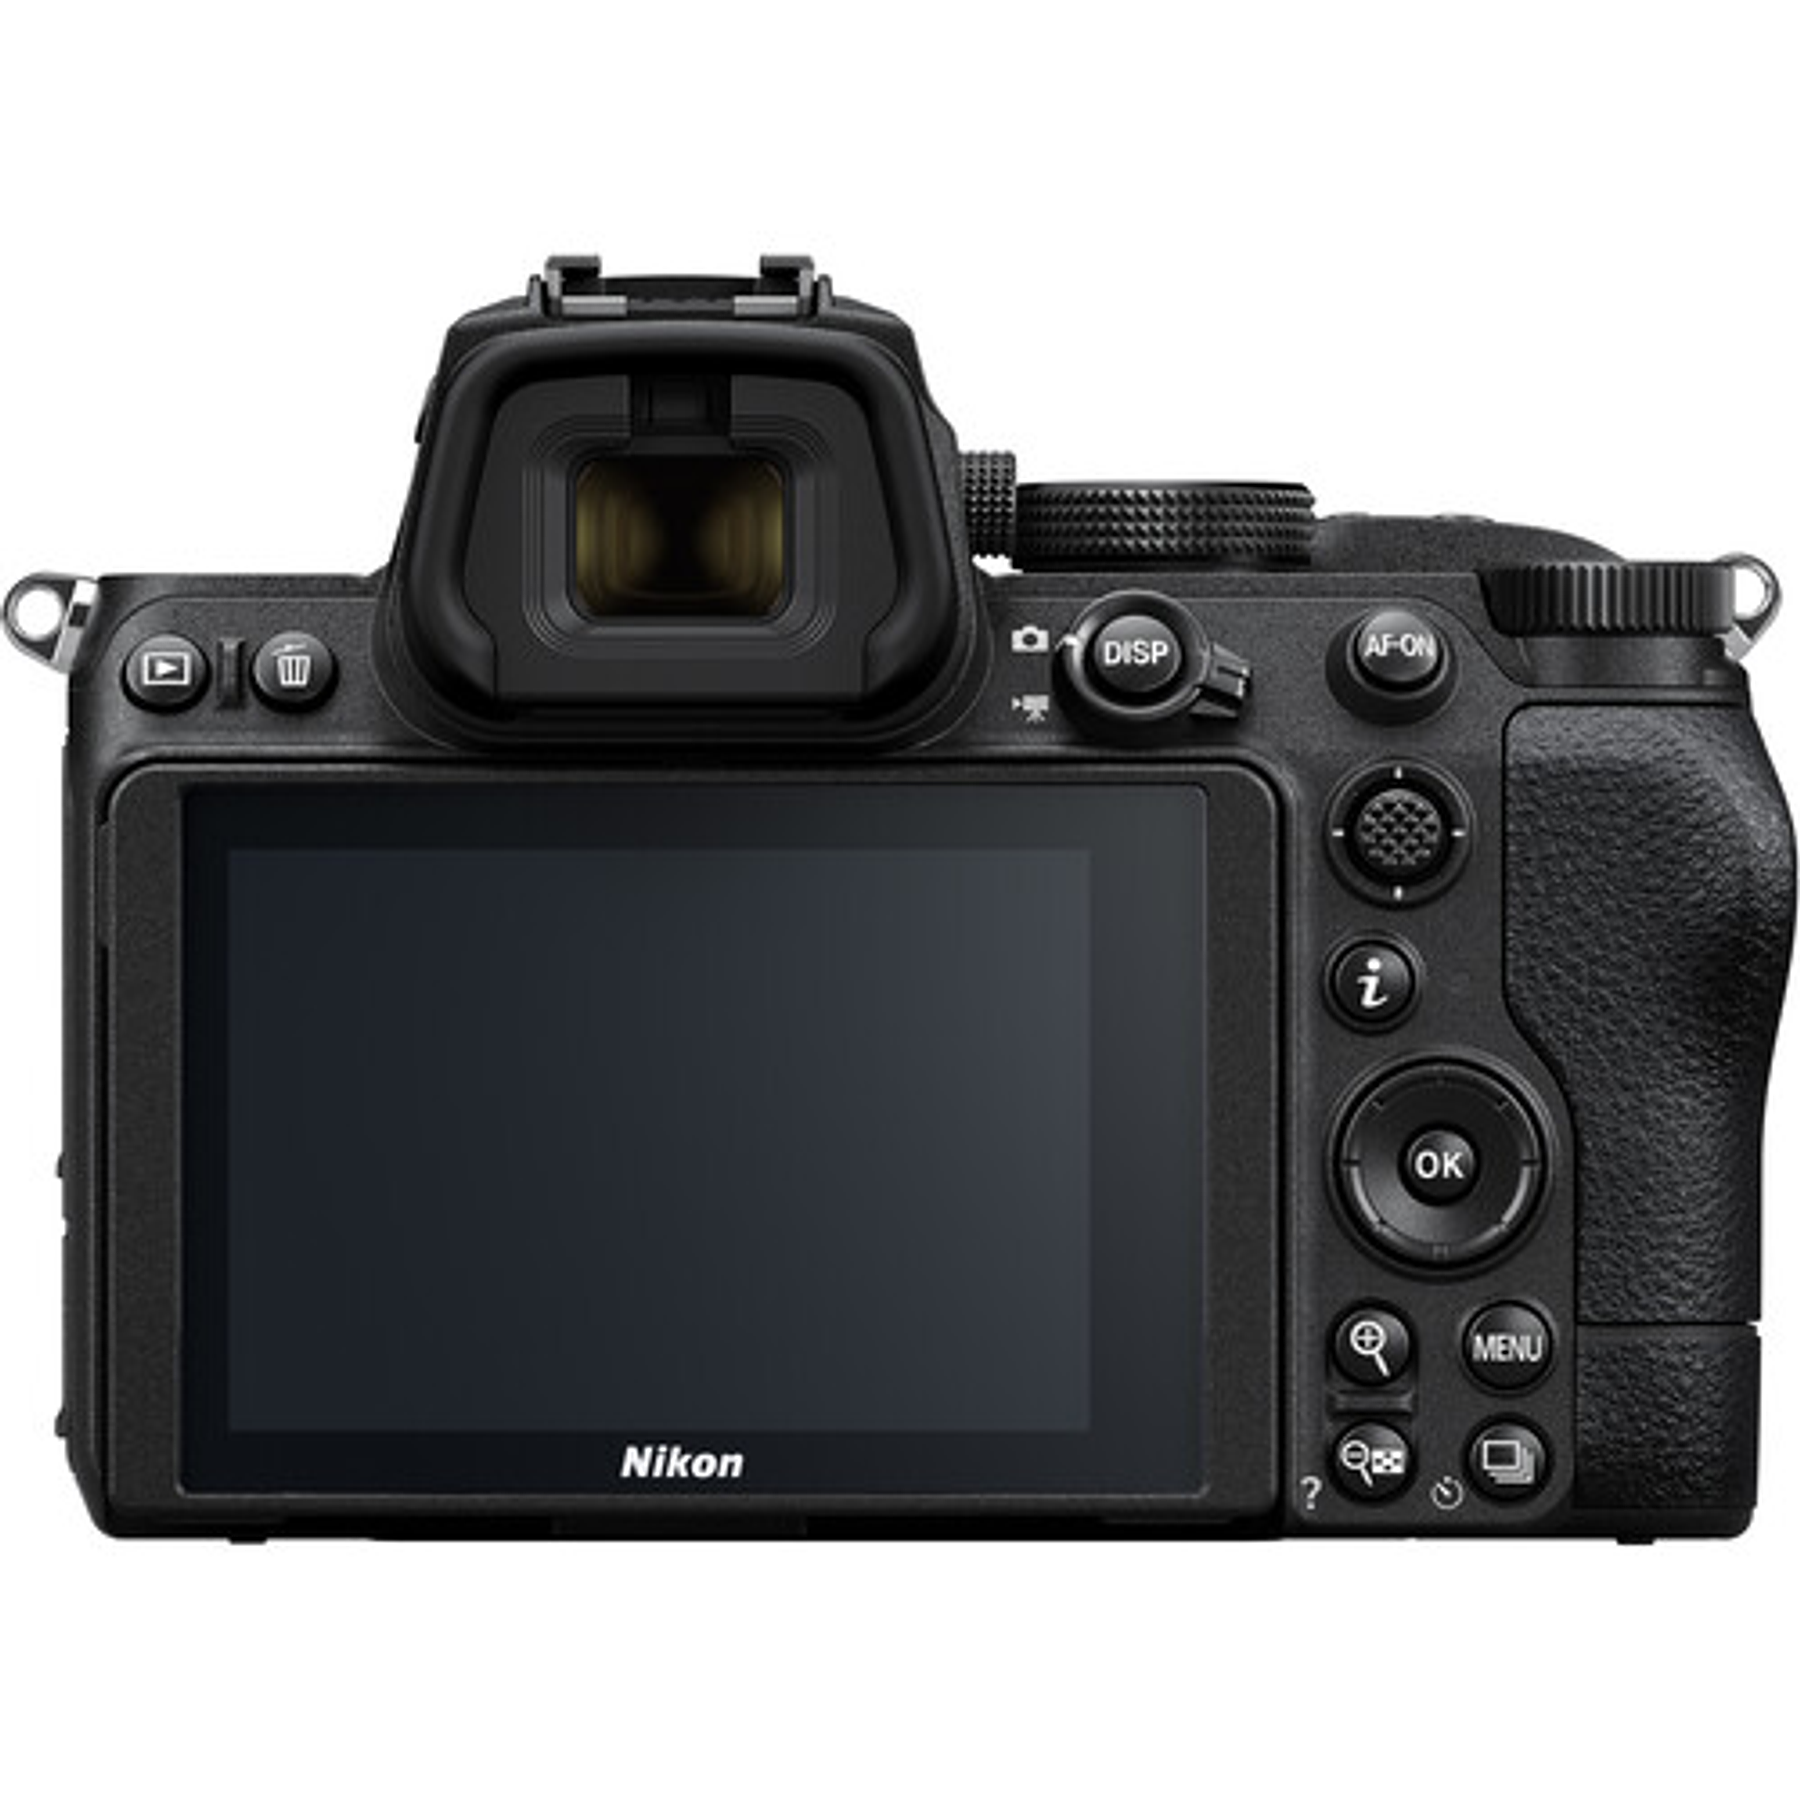 Batería Reemplazo Nikon EN-EL15 Kit 2x con Cargador USB